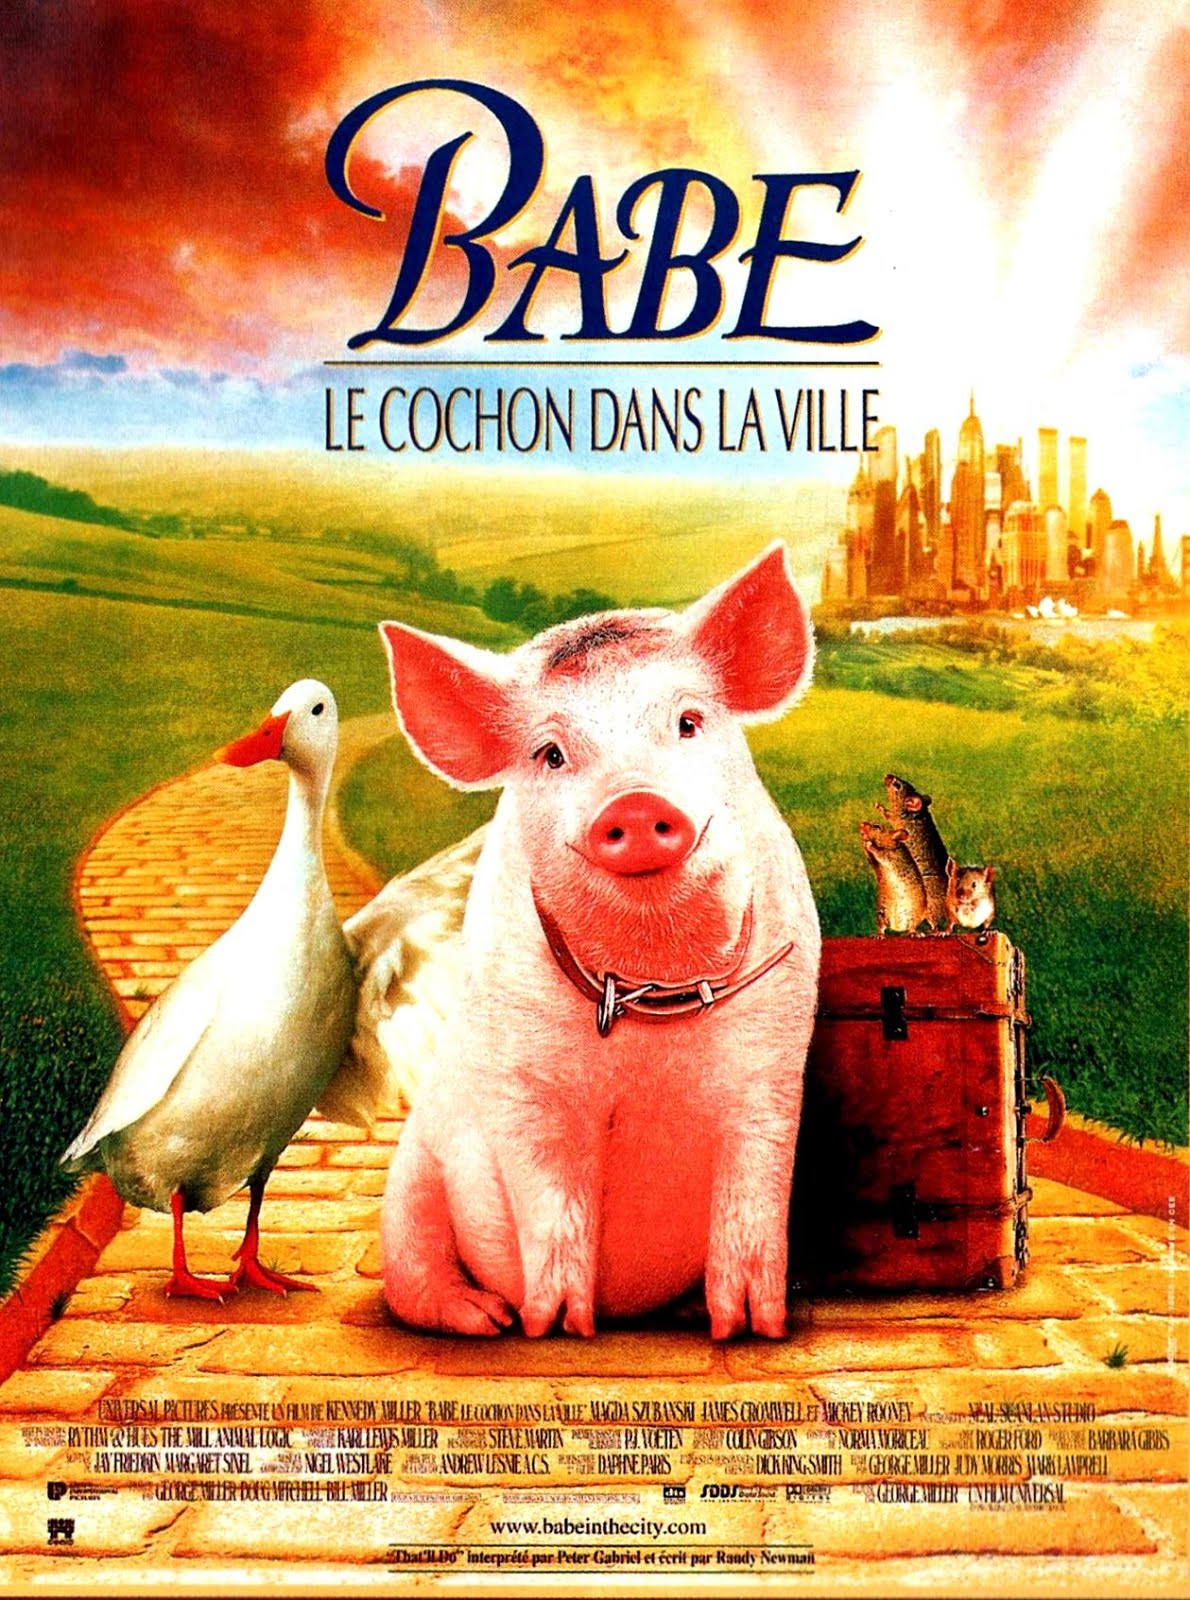 Babe : Le cochon dans la ville (1998) George Miller - Babe : Pig in the city (01.1998 / 1998)